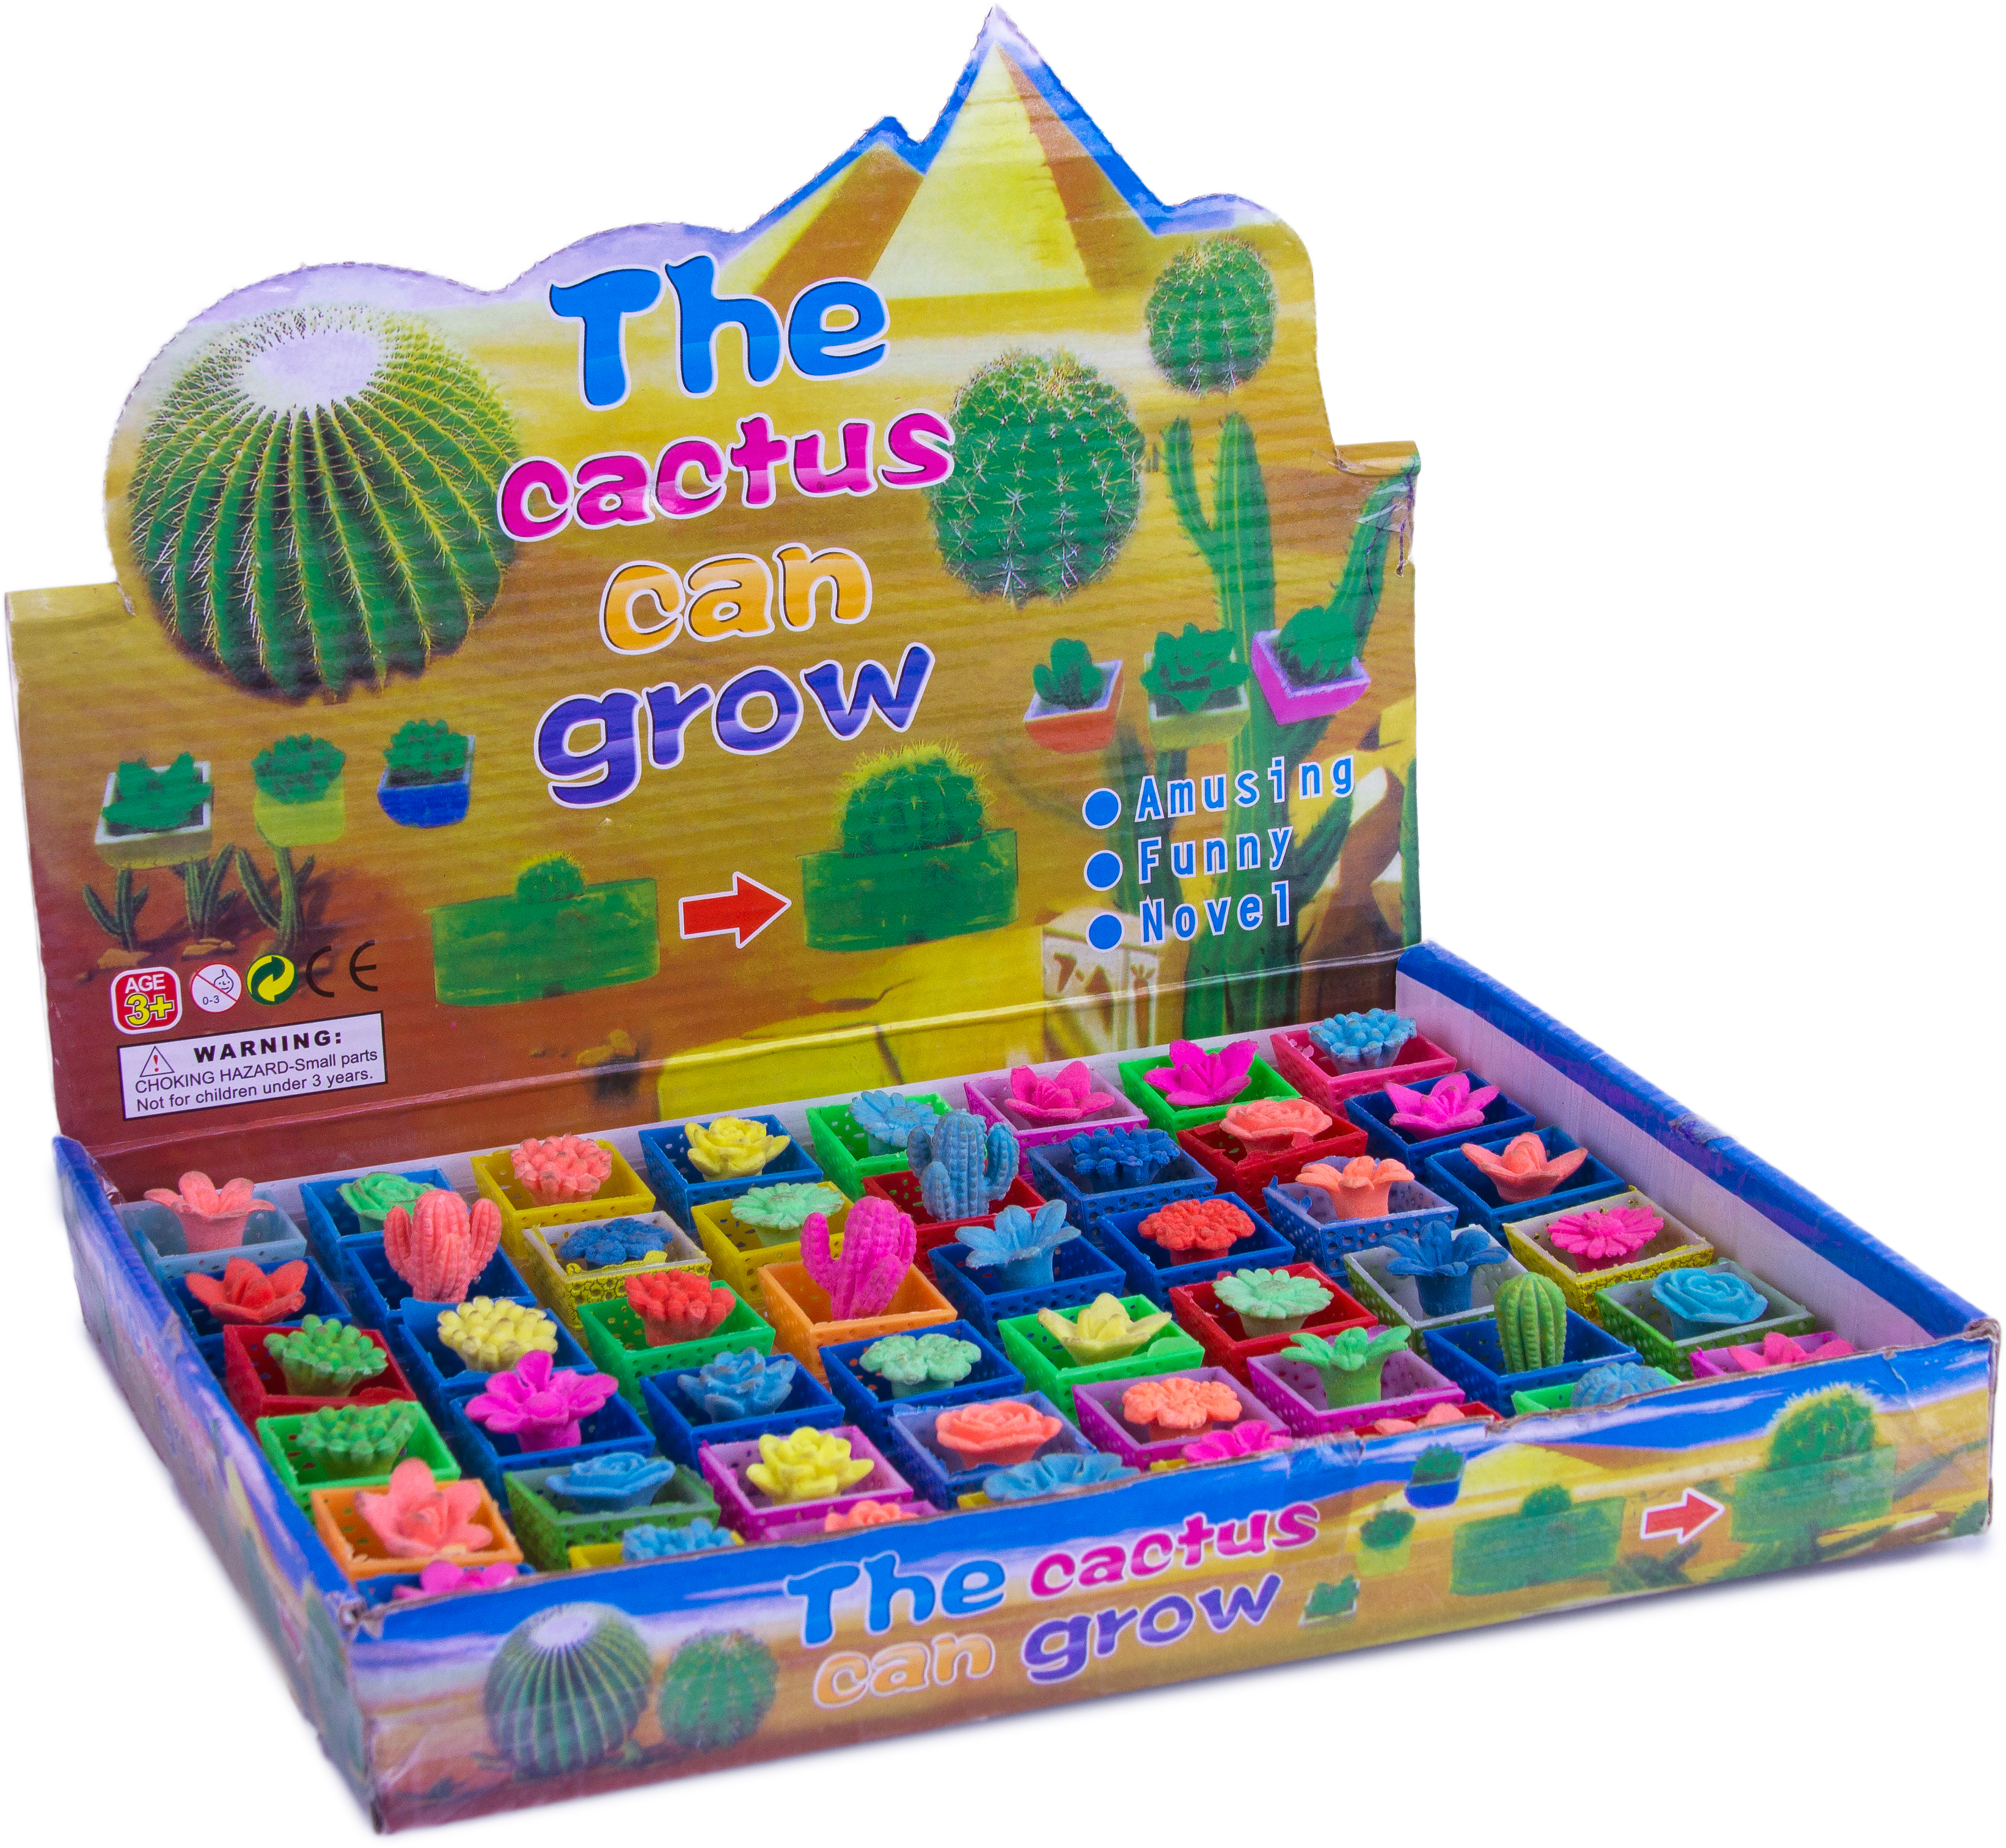 Растущая игрушка «Вырасти Цветочек» 6 штук, Н040-4